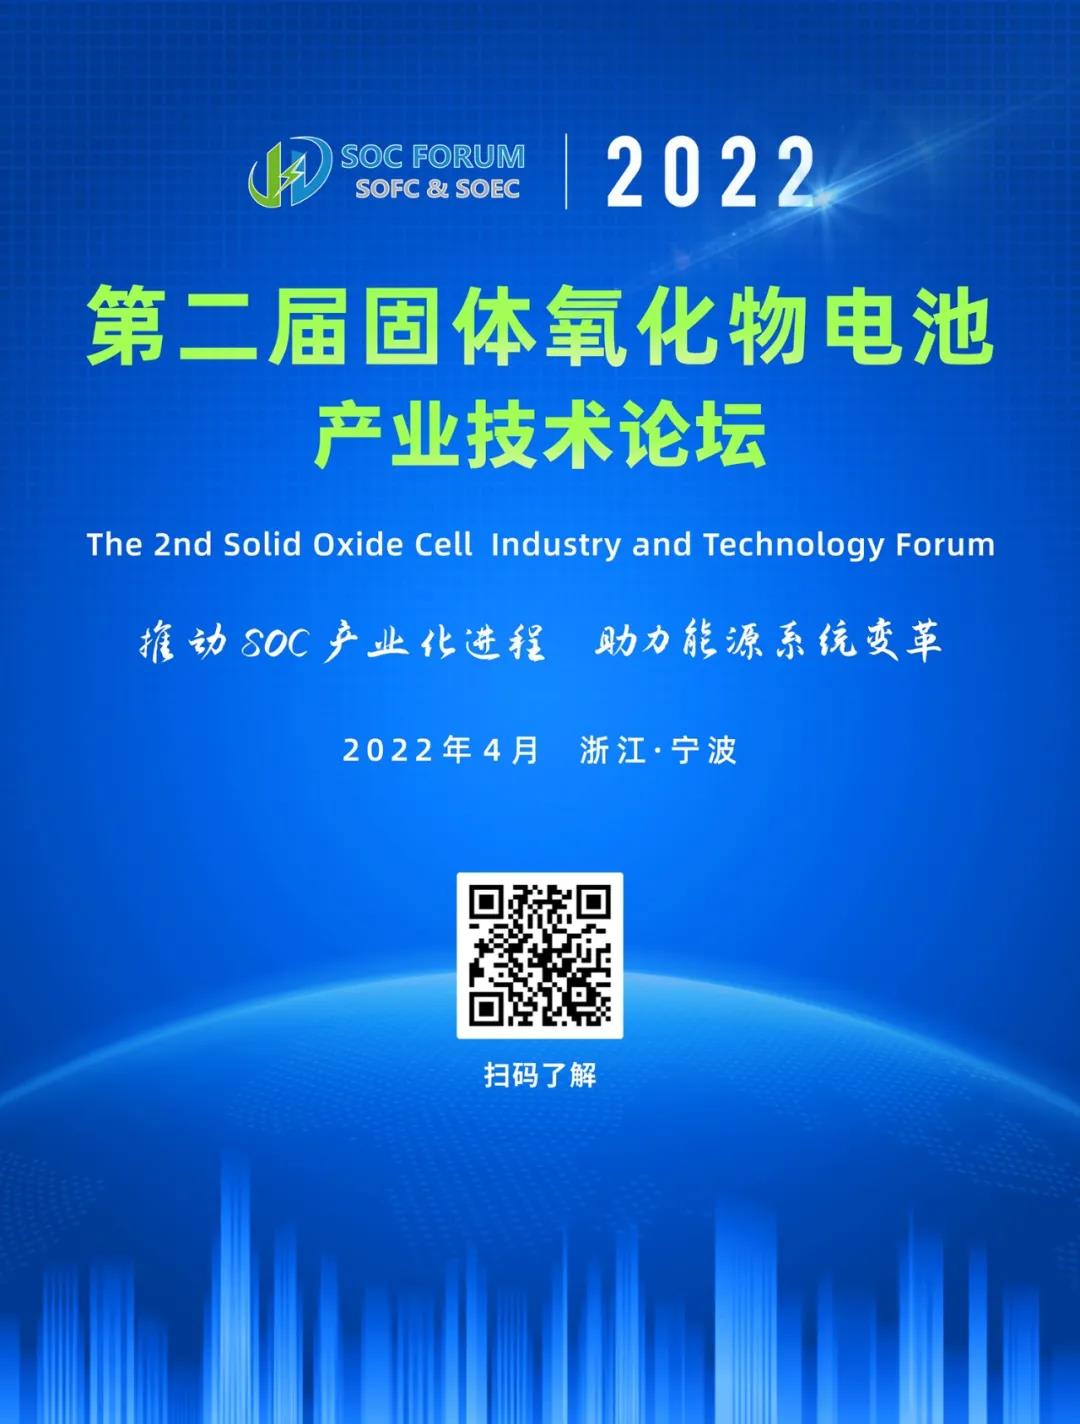 2022年SOC专题论坛／第二届固体氧化物电池产业技术论坛 报名通道开启！